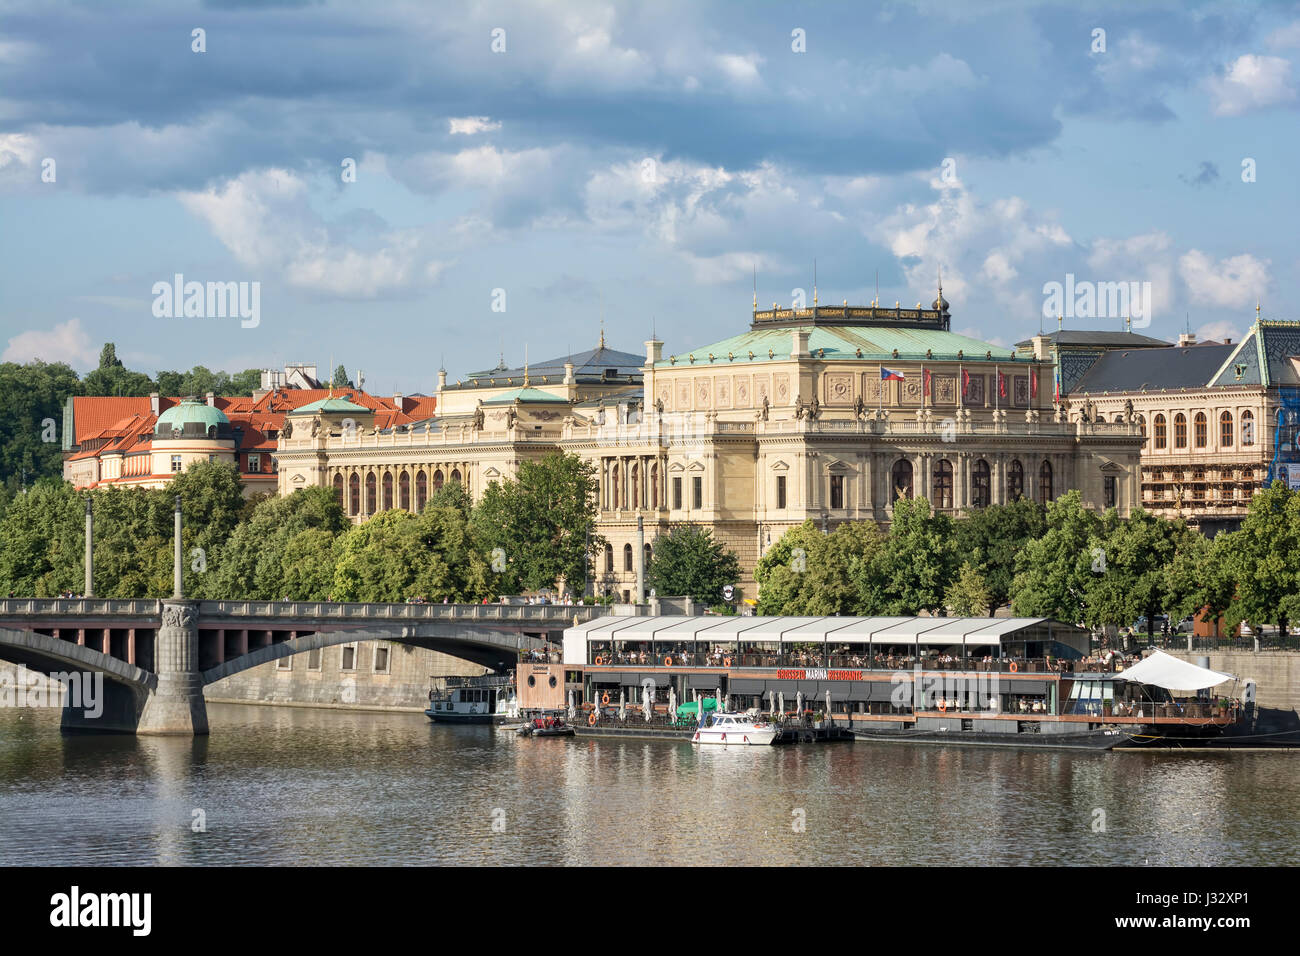 Praga, República Checa, 5 de julio de 2016: Vista del río Vltava y Galerie Rudolfinum, un famoso edificio en Praga alojamiento la Orquesta Filarmónica Checa Foto de stock